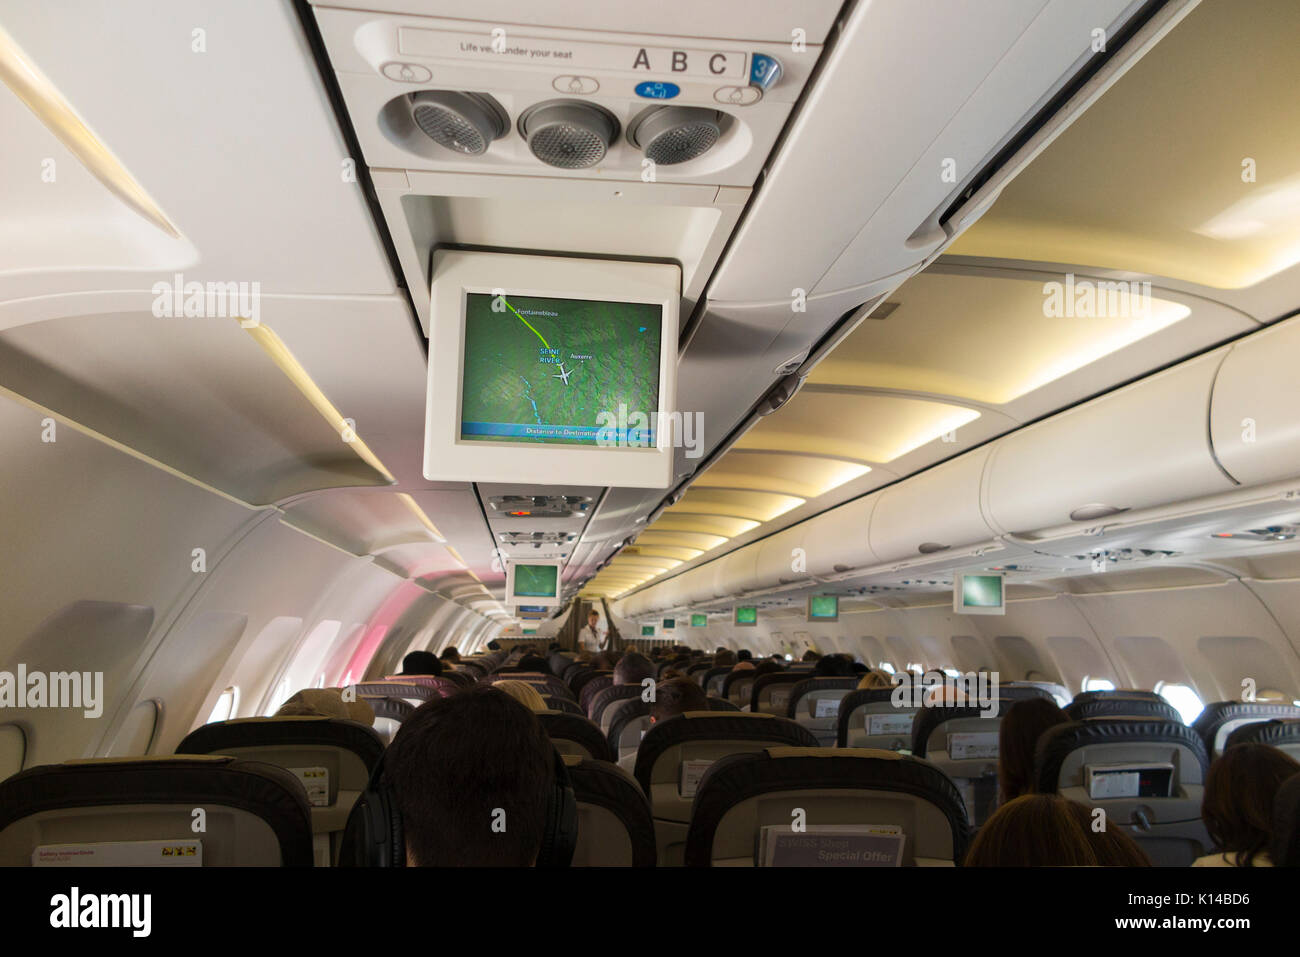 L'intérieur d'un avion / à l'intérieur d'un avion d'air cabine avec position de vol moniteur affichage de la carte sur un écran de télévision montrant la position de l'aéronef au-dessus / au-dessus de la France. Banque D'Images